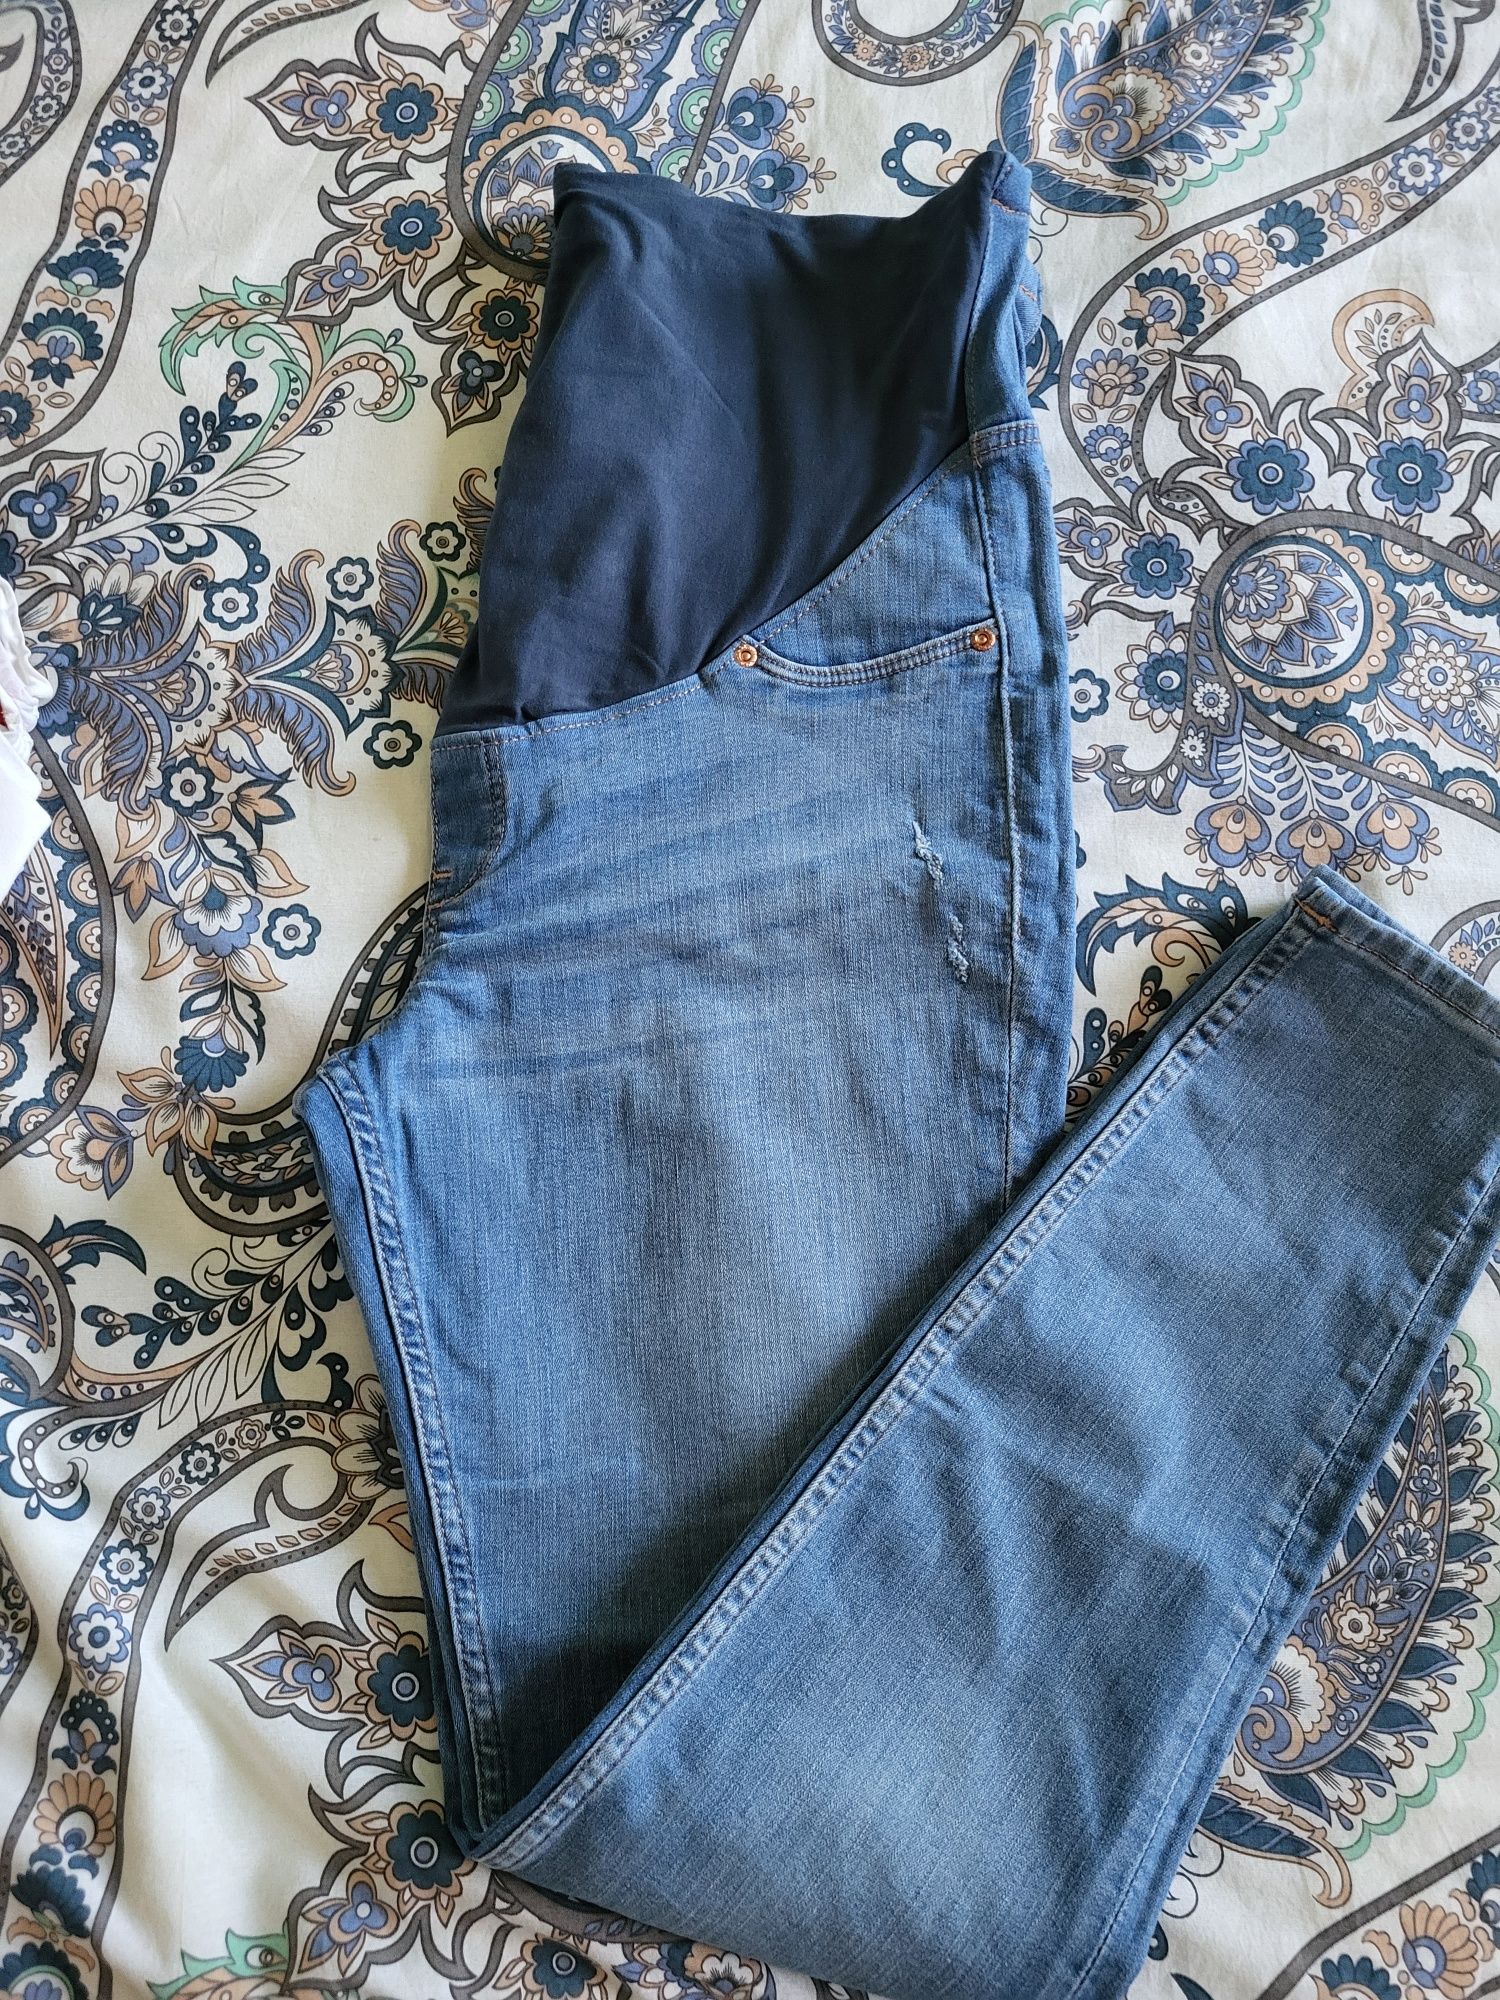 Дънки за бременни MAMA super skinny jeans